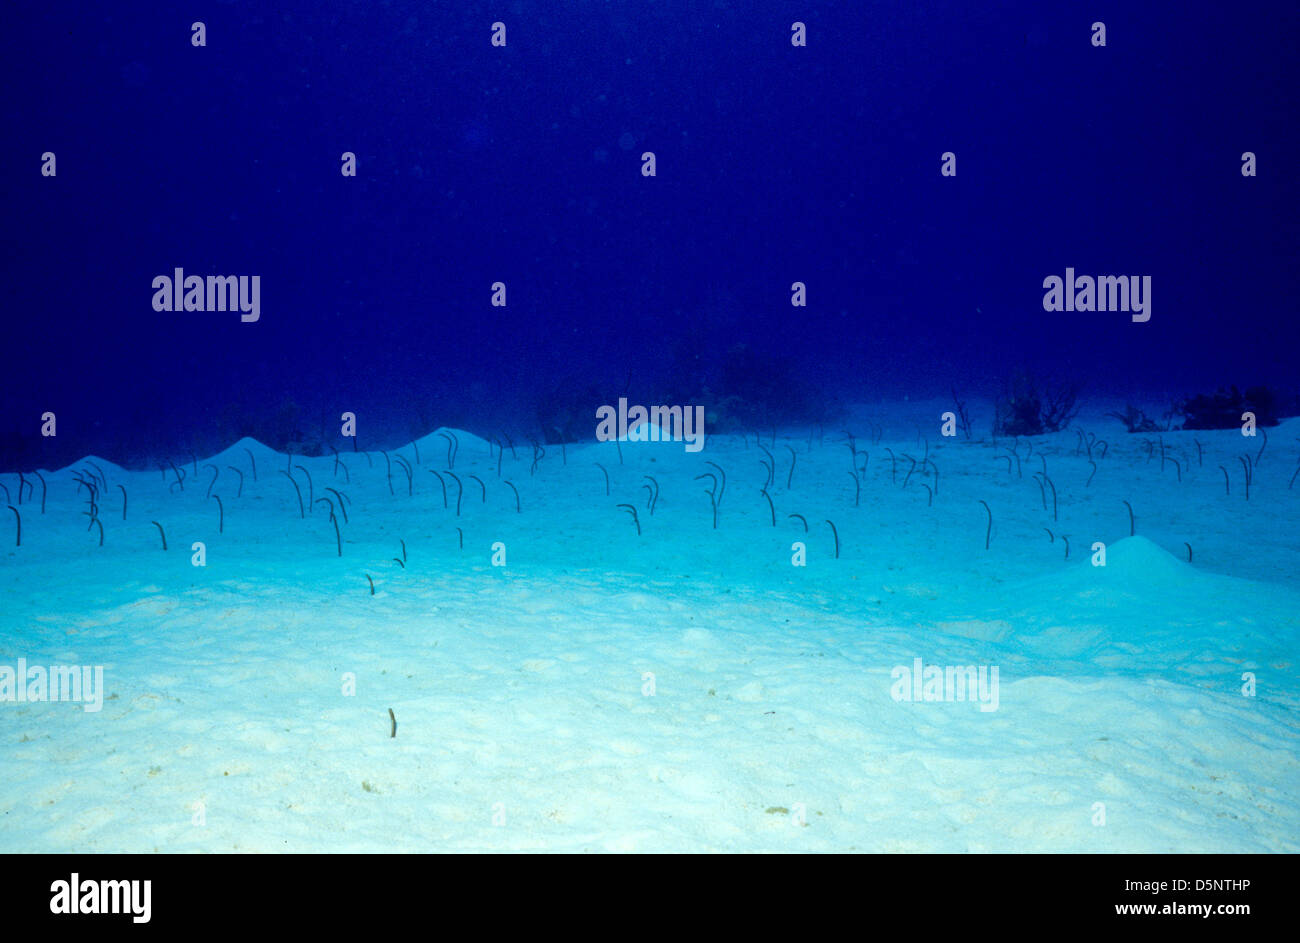 Kaimaninseln Sept 1994 digitale Folien, Konvertierungen, Tauchen, Taucher, Coral, Unterwasser Fotografie, Cayman-Inseln, Karibik Stockfoto